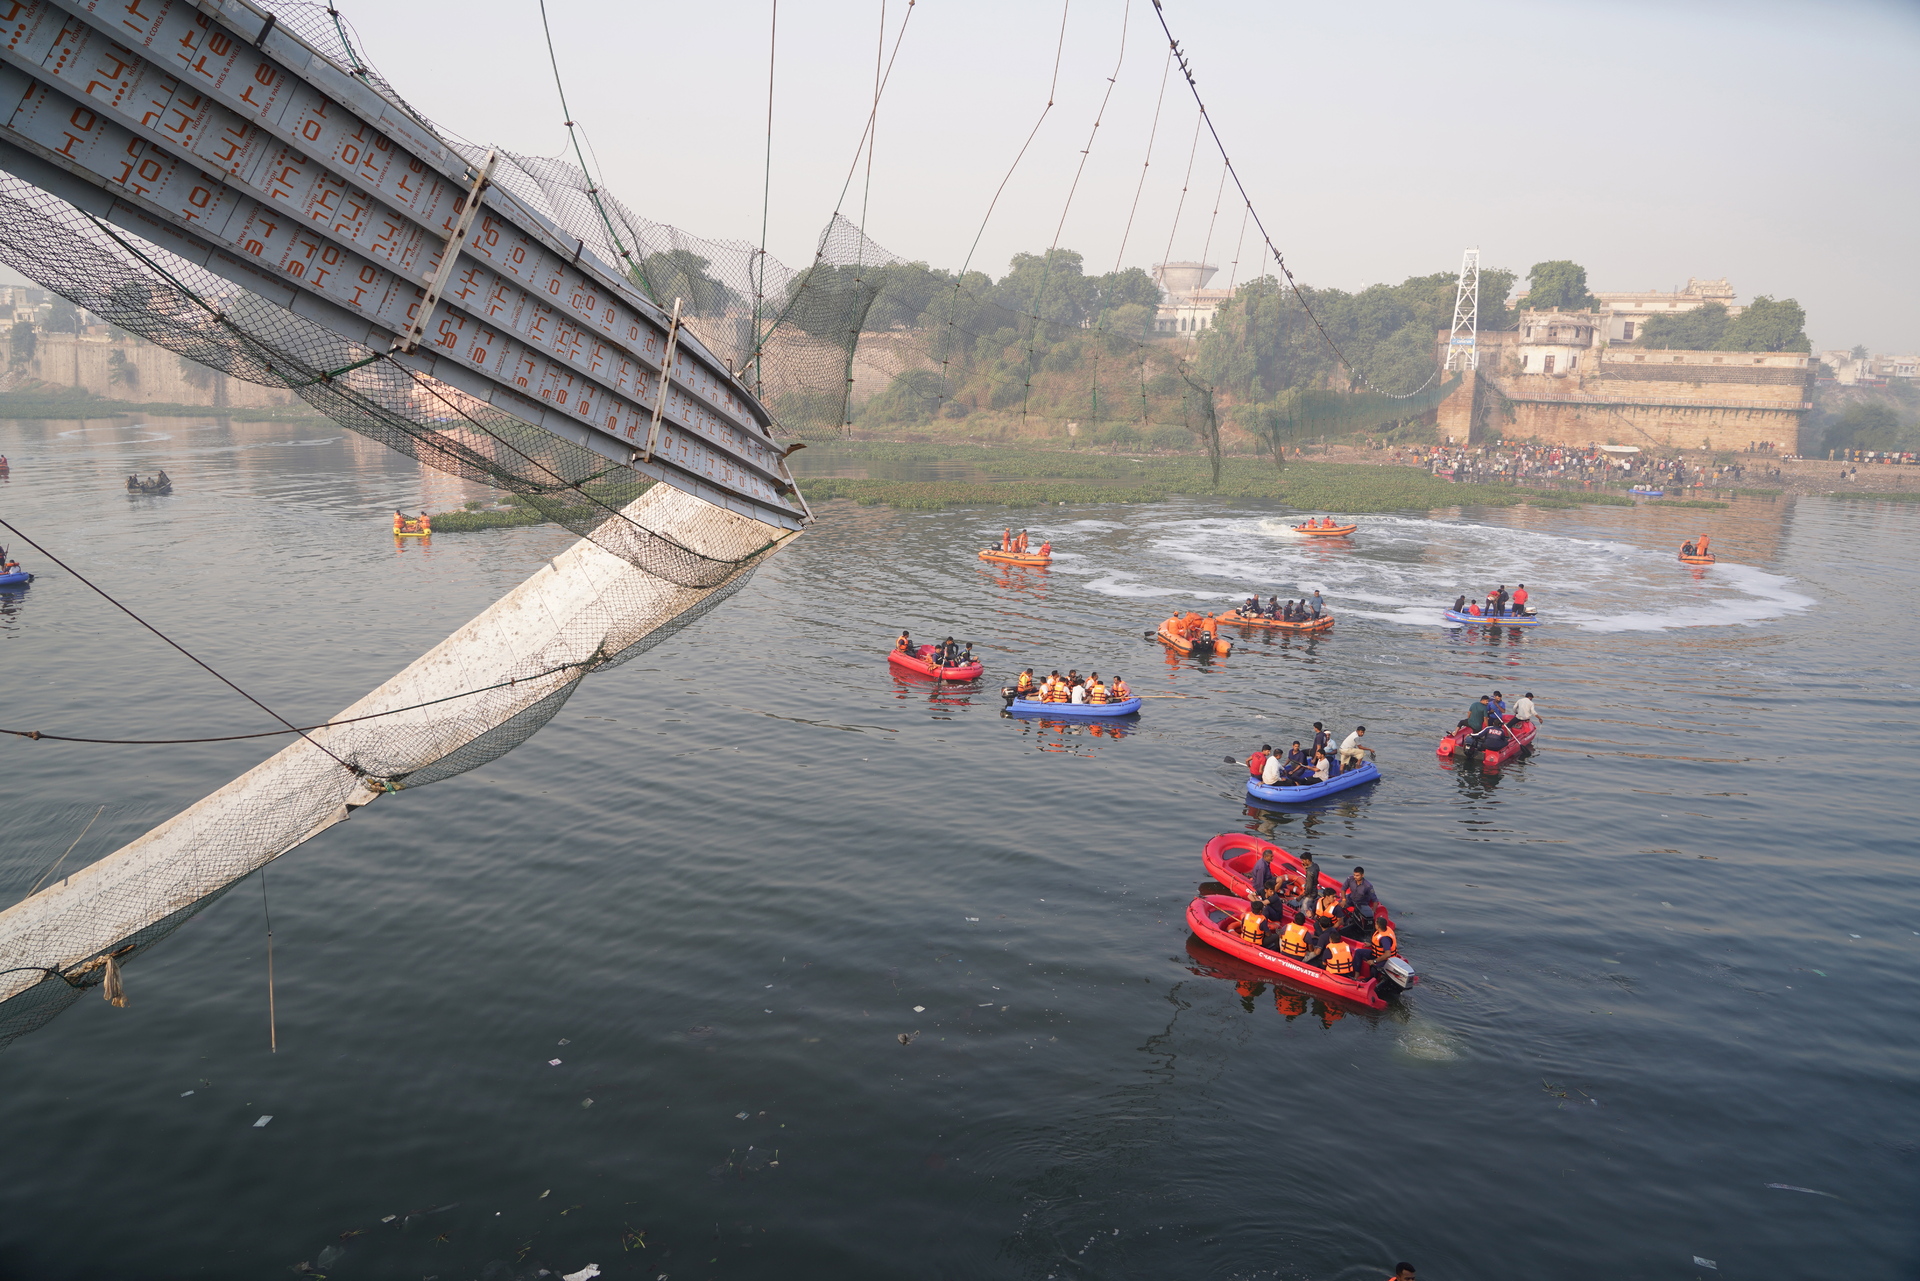 Arrestan a nueve personas tras el colapso del puente que dejó 134 muertos en India